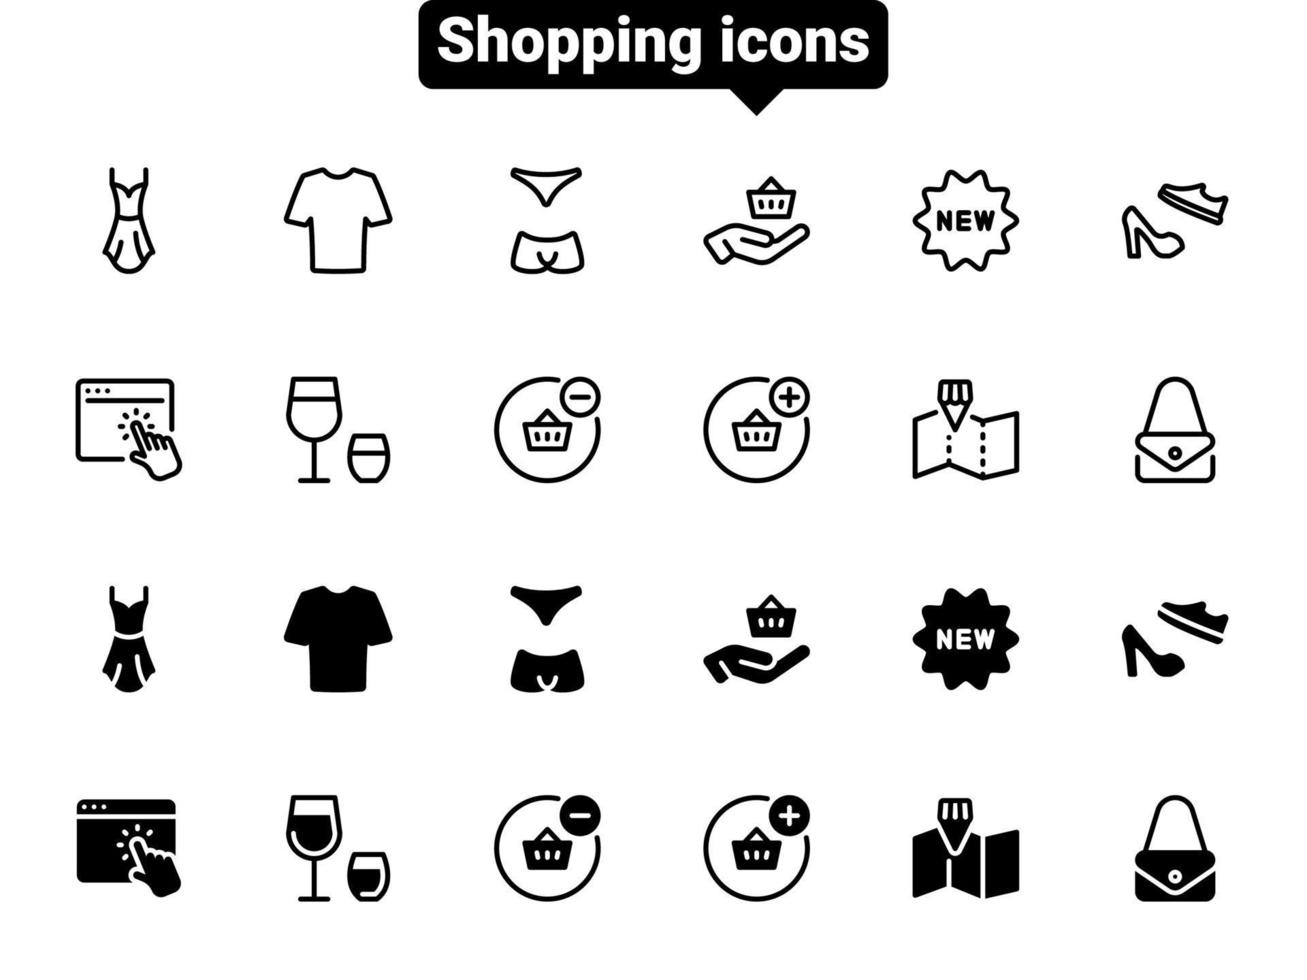 conjunto de iconos de vector negro, aislado sobre fondo blanco. ilustración plana sobre un tema de compras de ropa